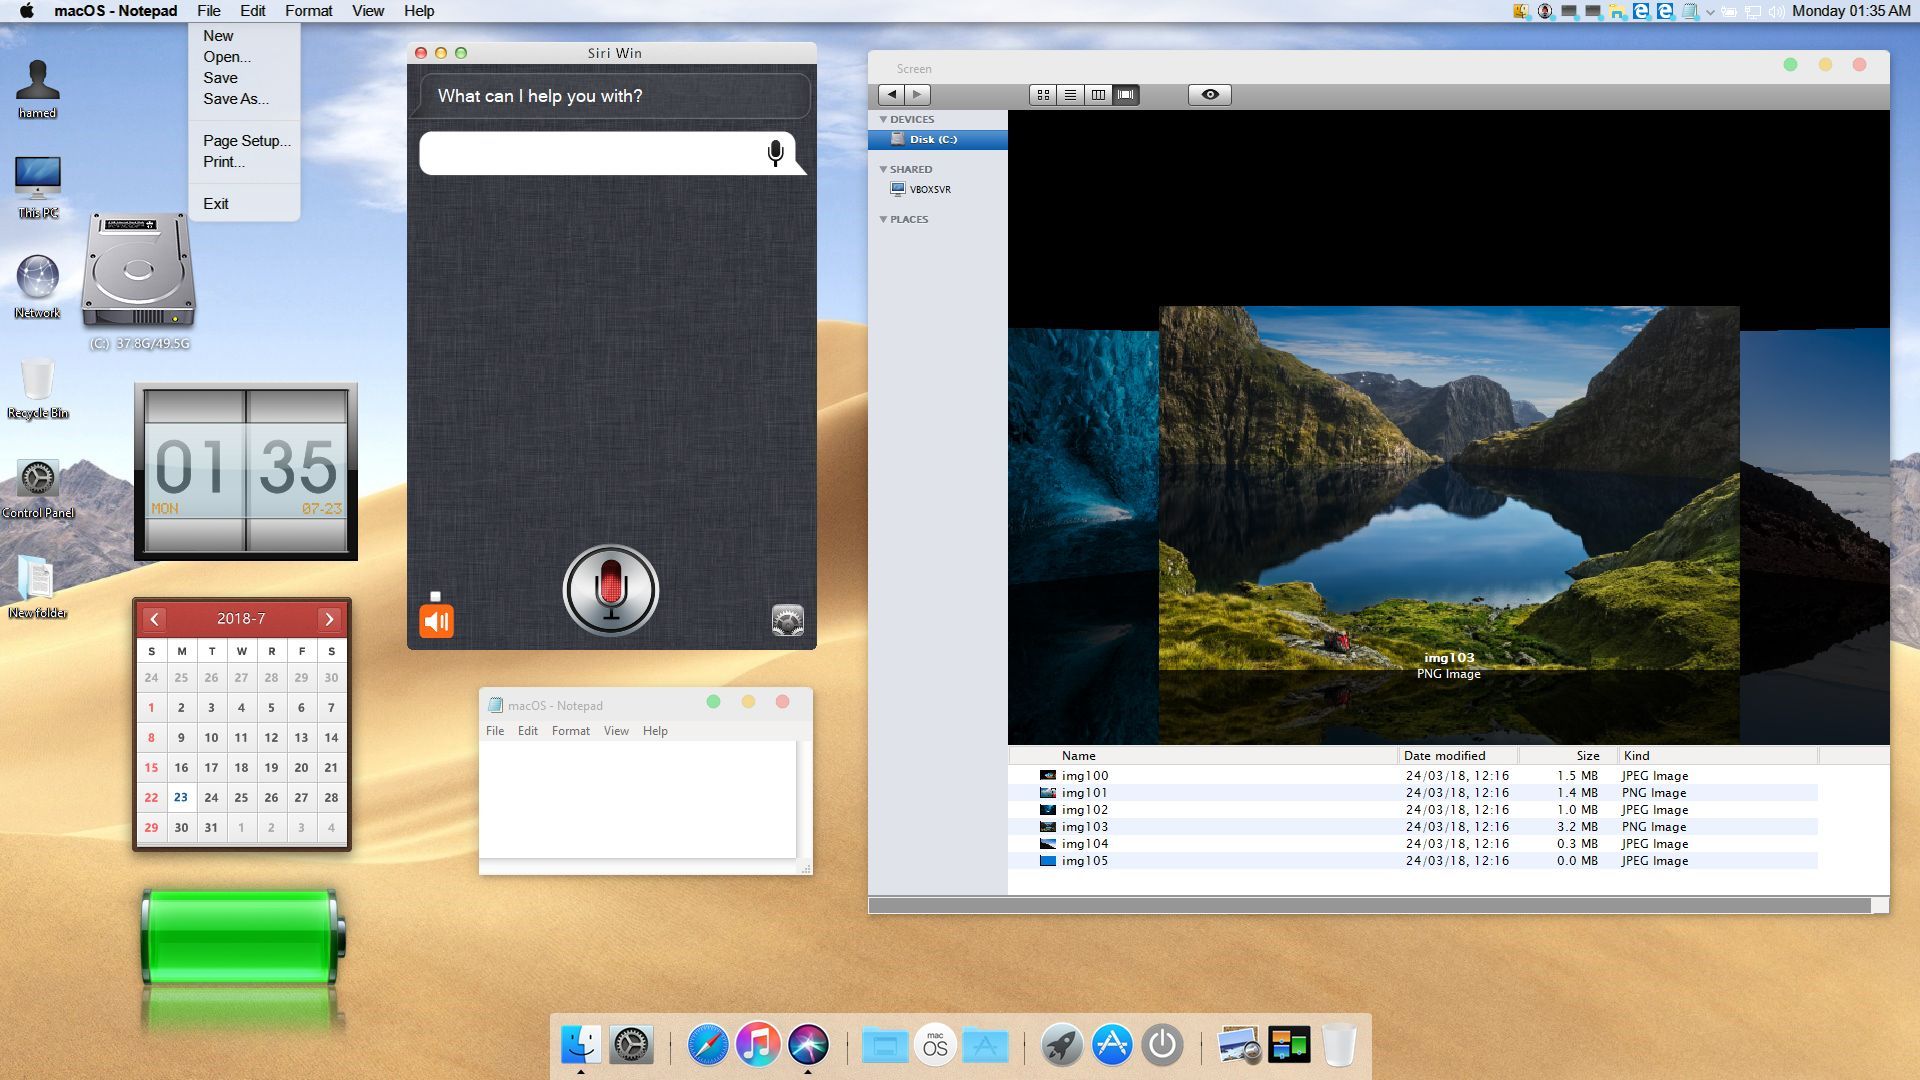 Download Mac Os X Yosemite Skin Pack For Windows 7